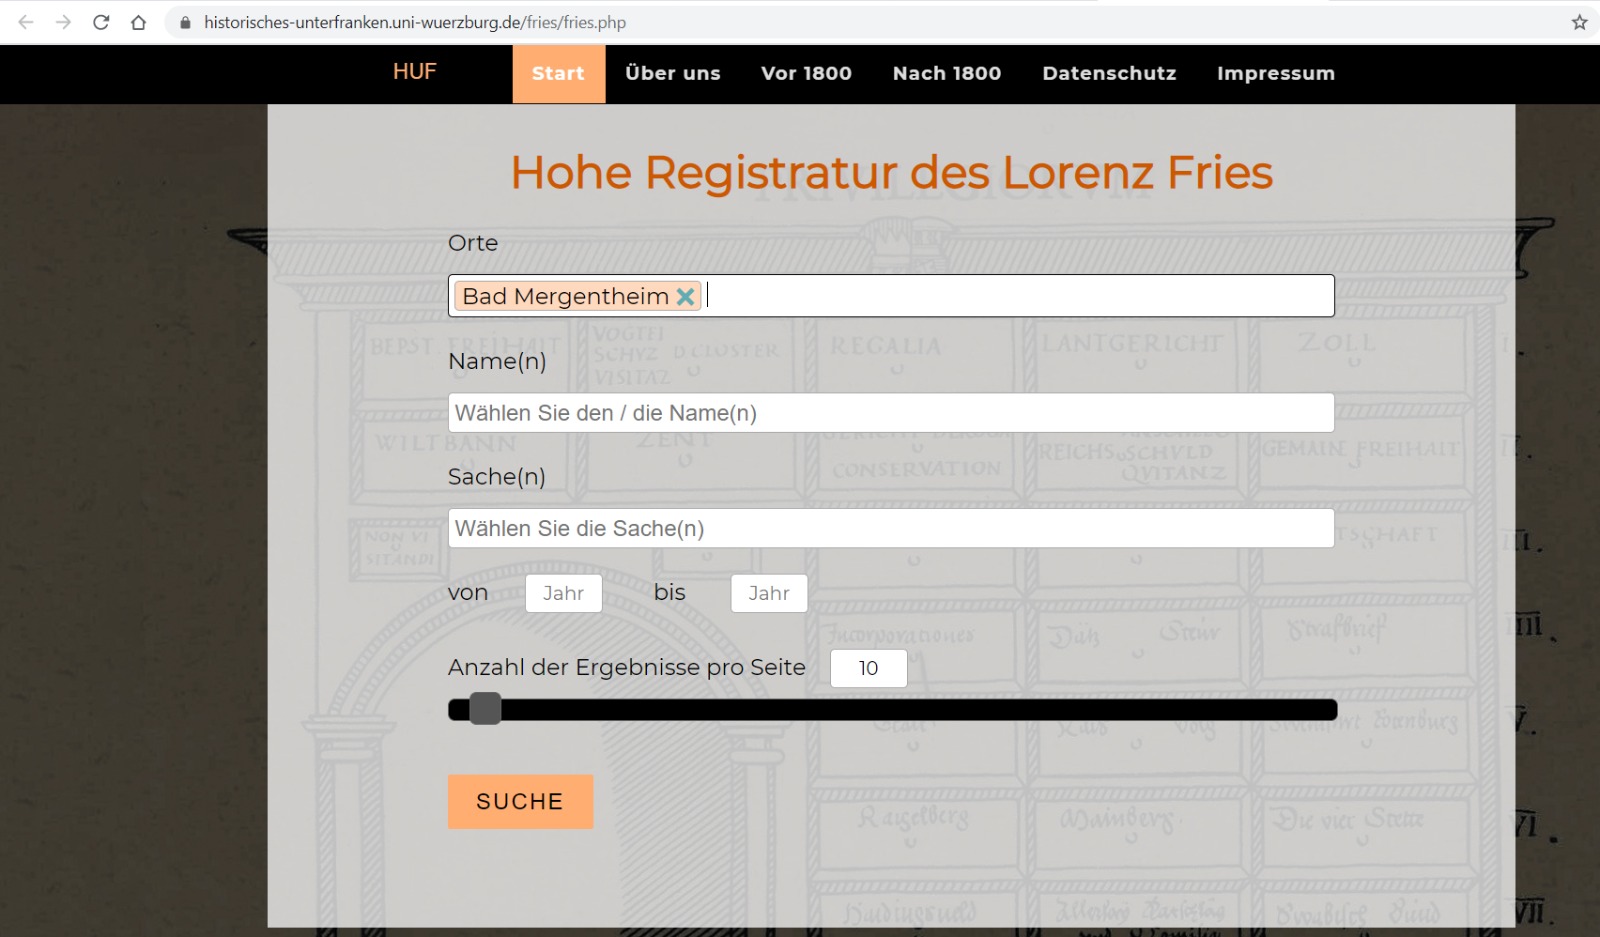 Auf dem Bild sieht man einen Screenshot des Eingabefeldes der Datenbank "Hohe Registratur des Lorenz Fries" der Website "Historisches Unterfranken.